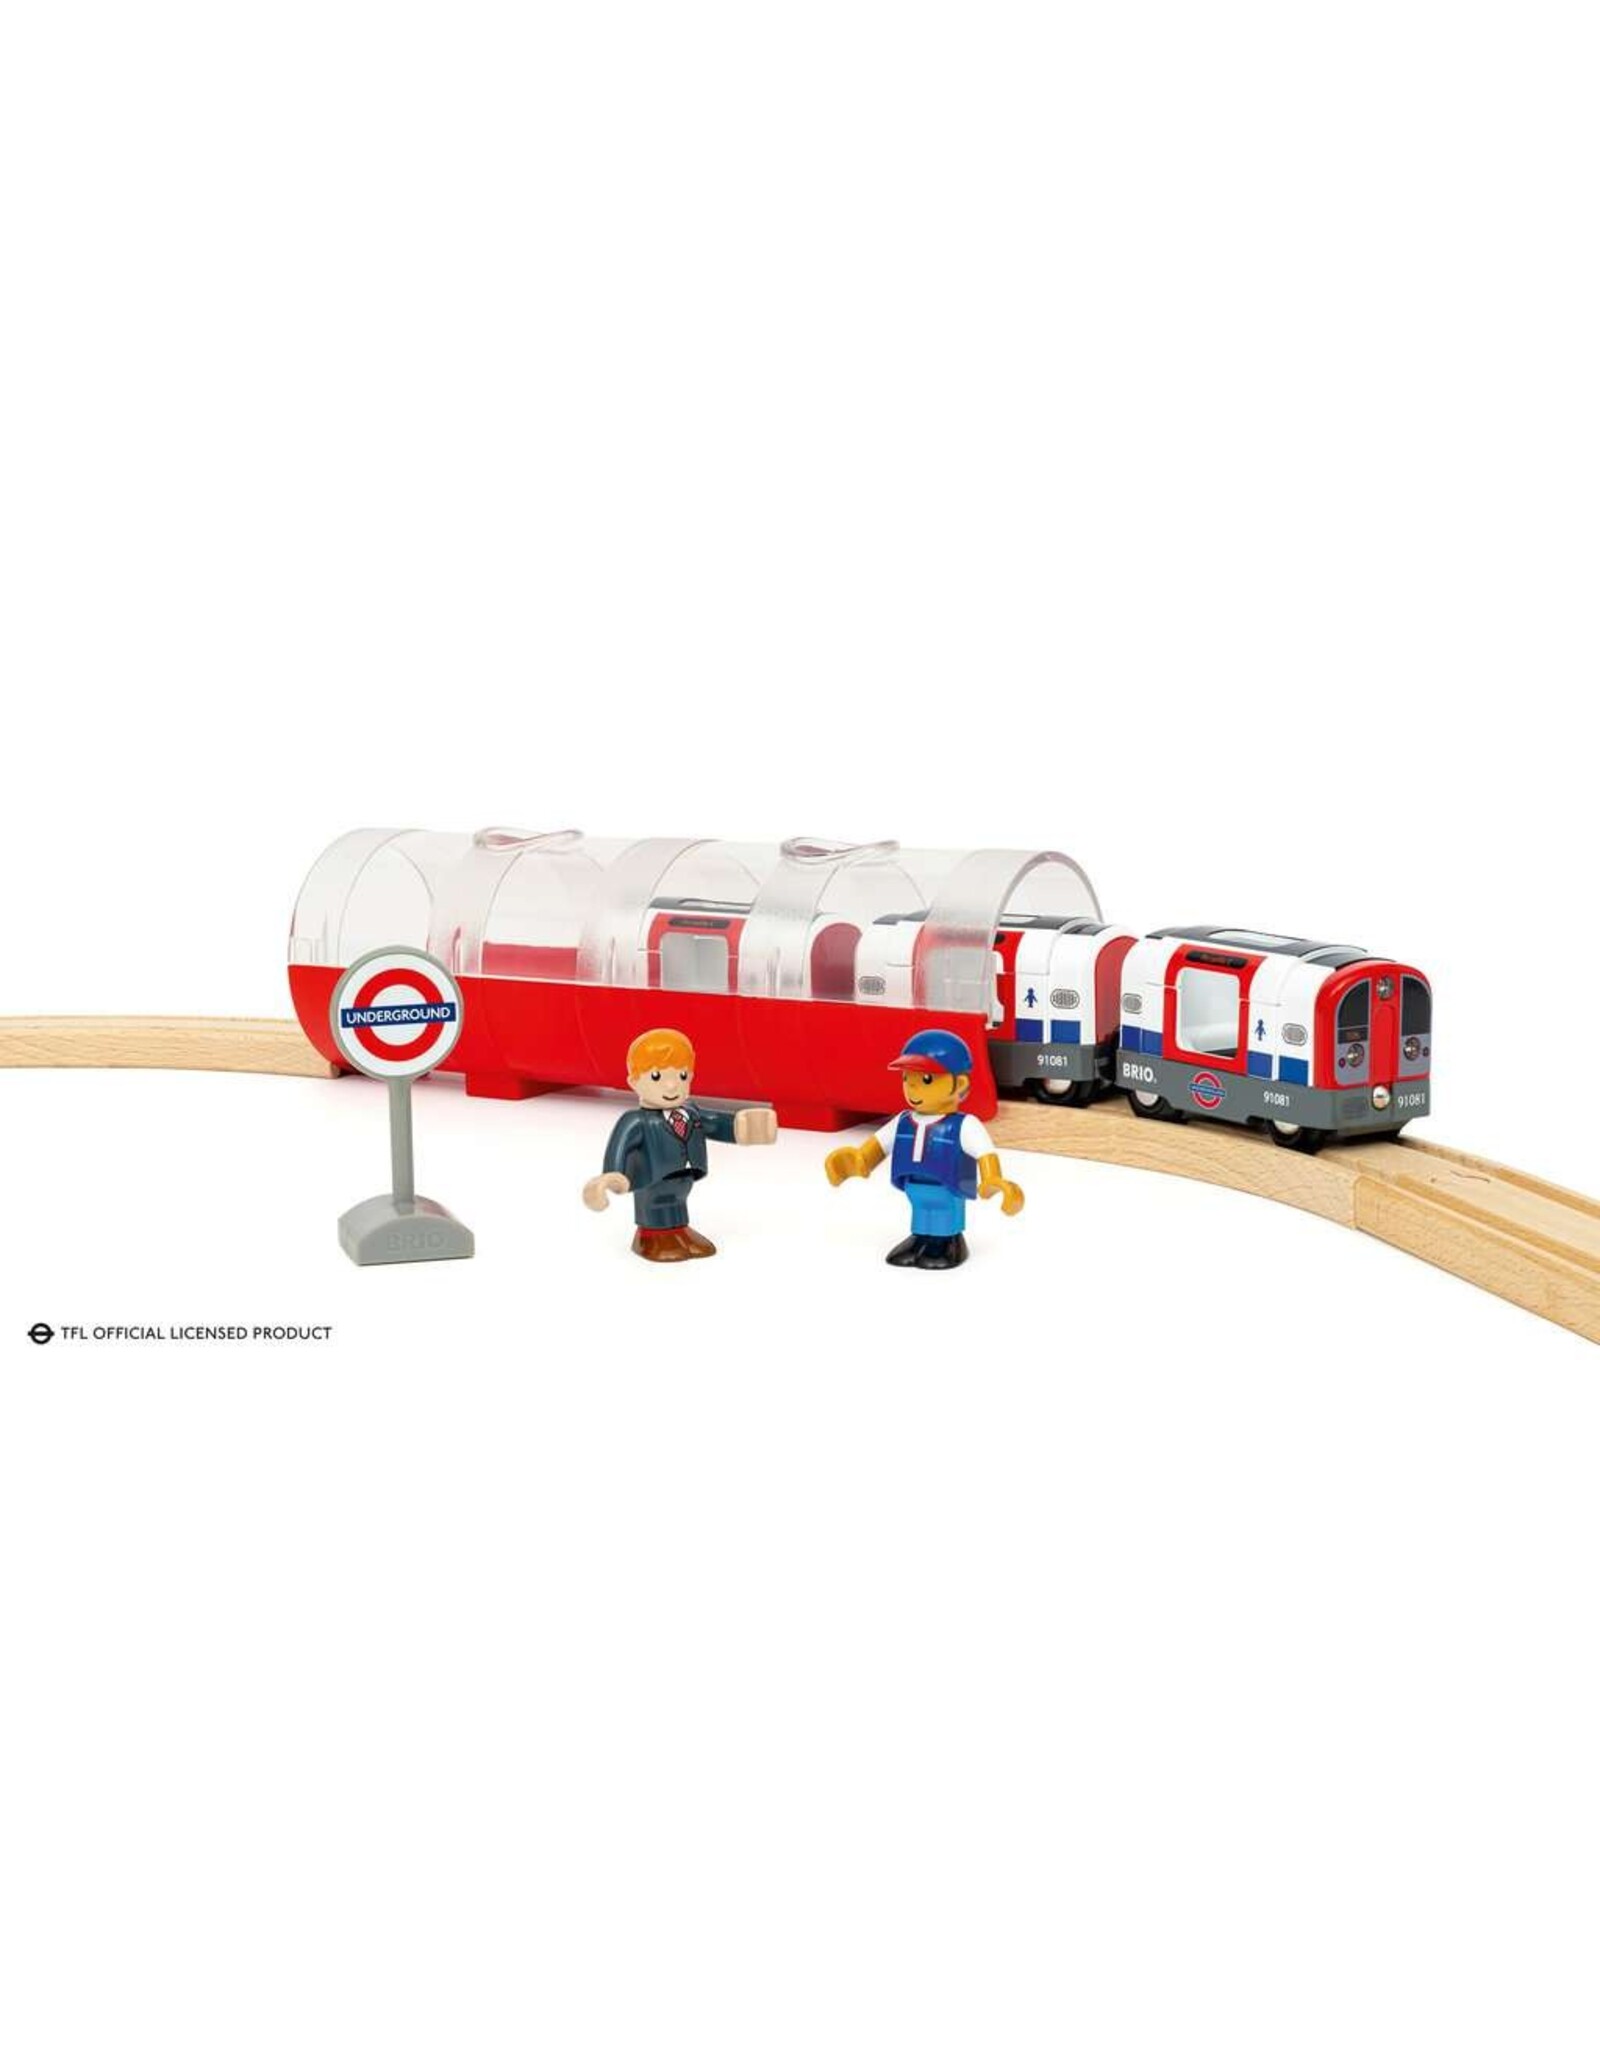 Brio London Underground Train